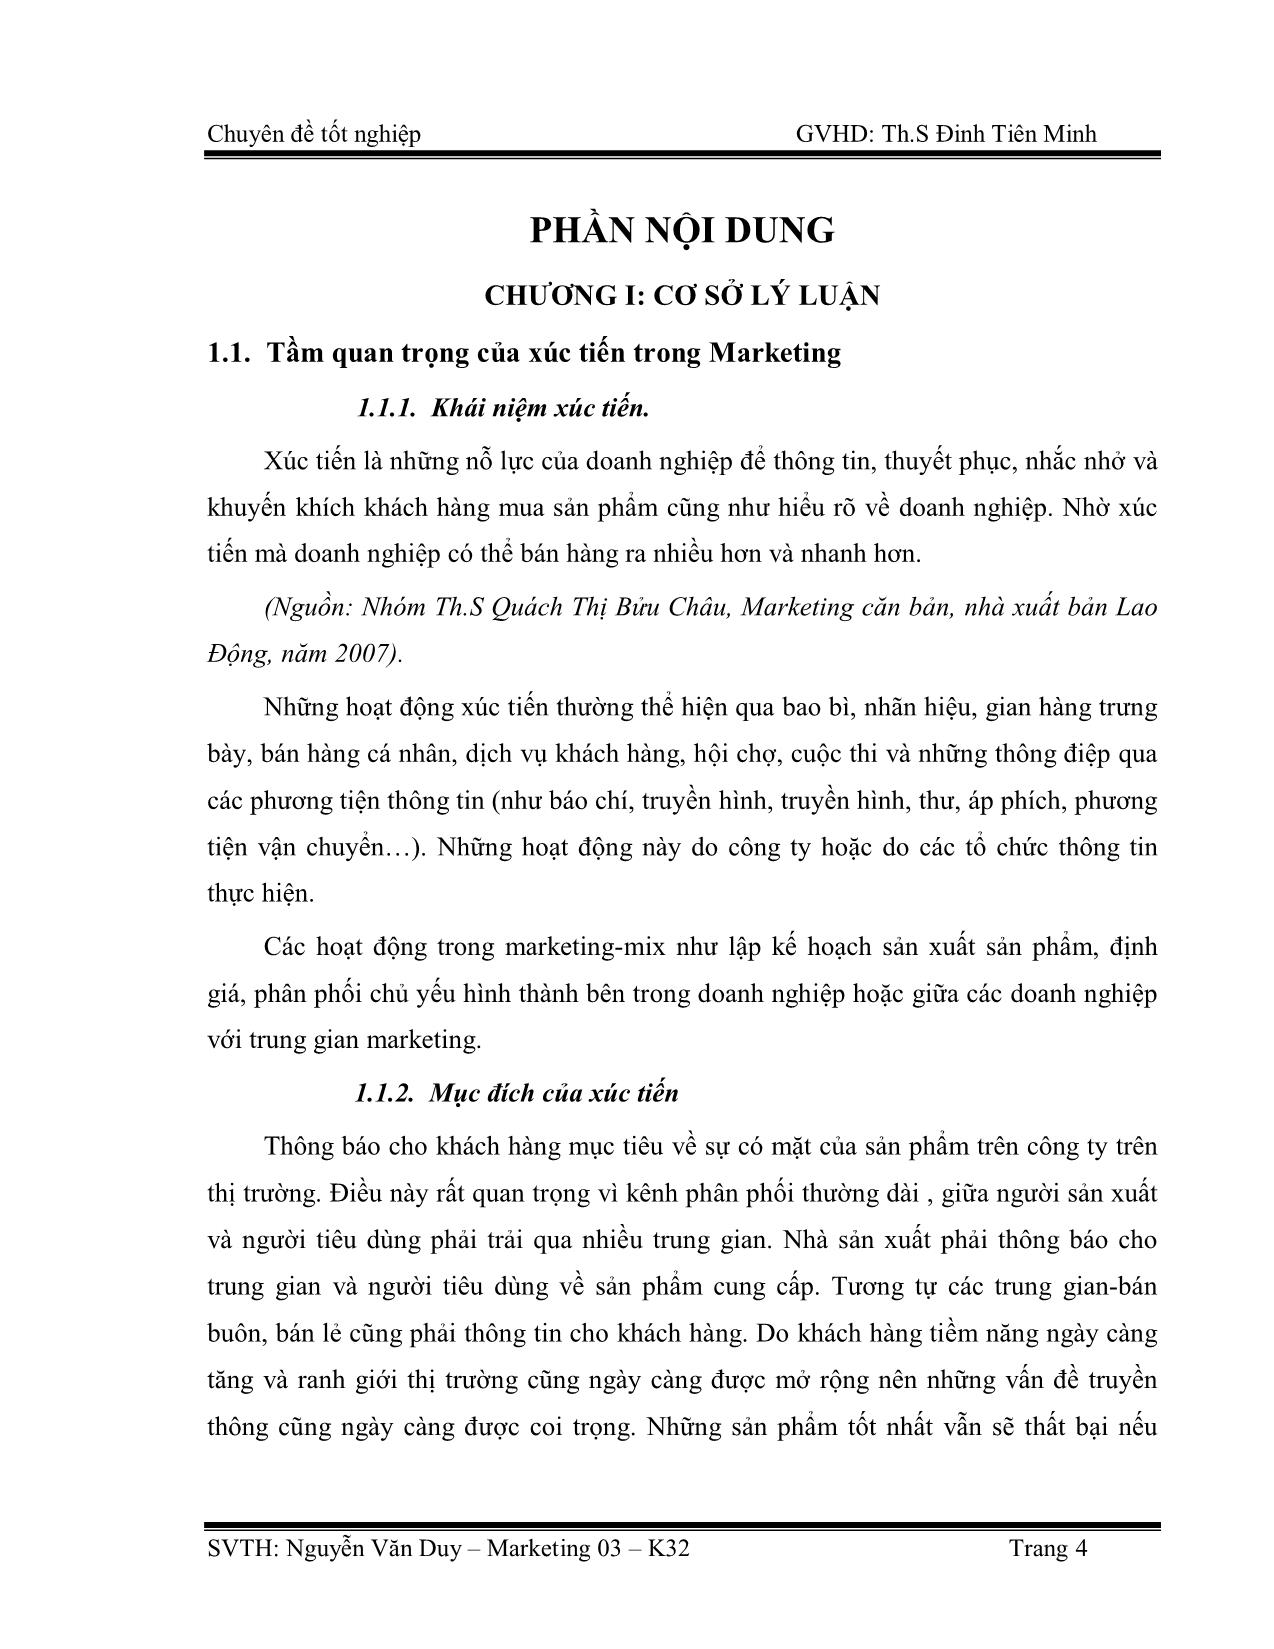 Chuyên đề Thực trạng về hoạt động xúc tiến bán hàng của công ty cổ phần cao su Đồng Phú trang 5